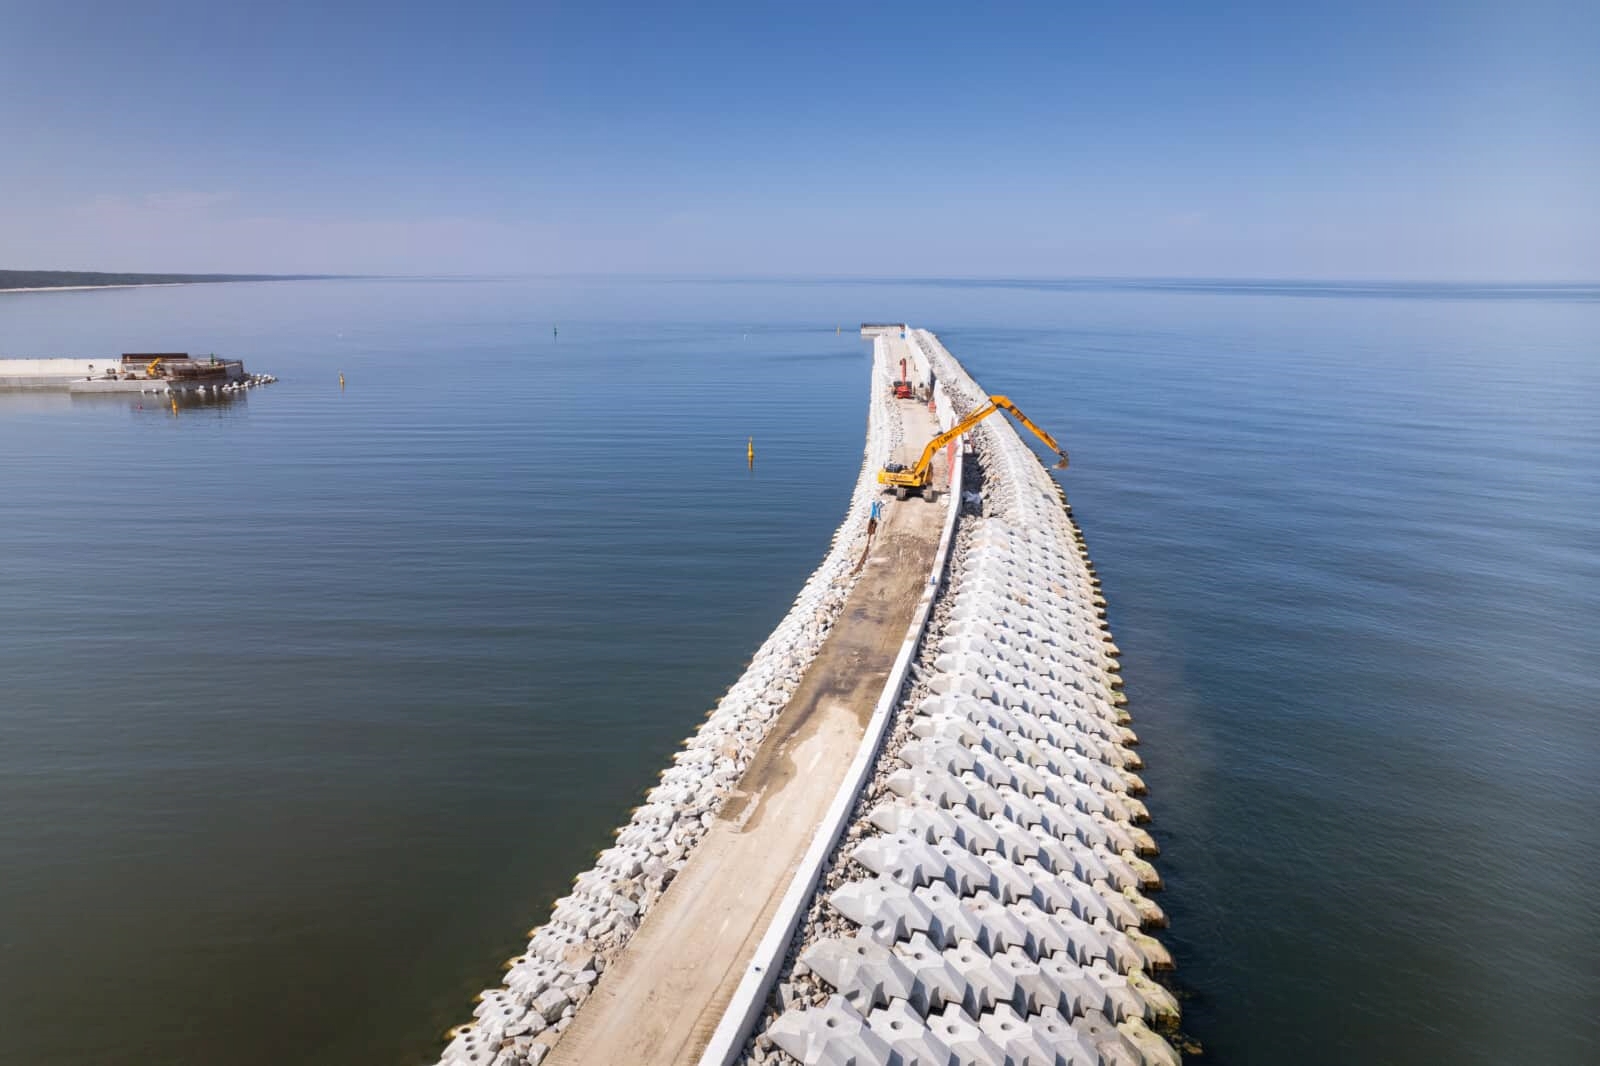 new sea waterway in Poland  Poland opens new waterway  Poland  Russia  പുതിയ ജലപാത തുറന്ന് പോളണ്ട്  പോളണ്ട്  റഷ്യ  ബാൾട്ടിക് കടല്‍  ബാൾട്ടിക്  വിസ്റ്റുല സ്‌പിറ്റ്